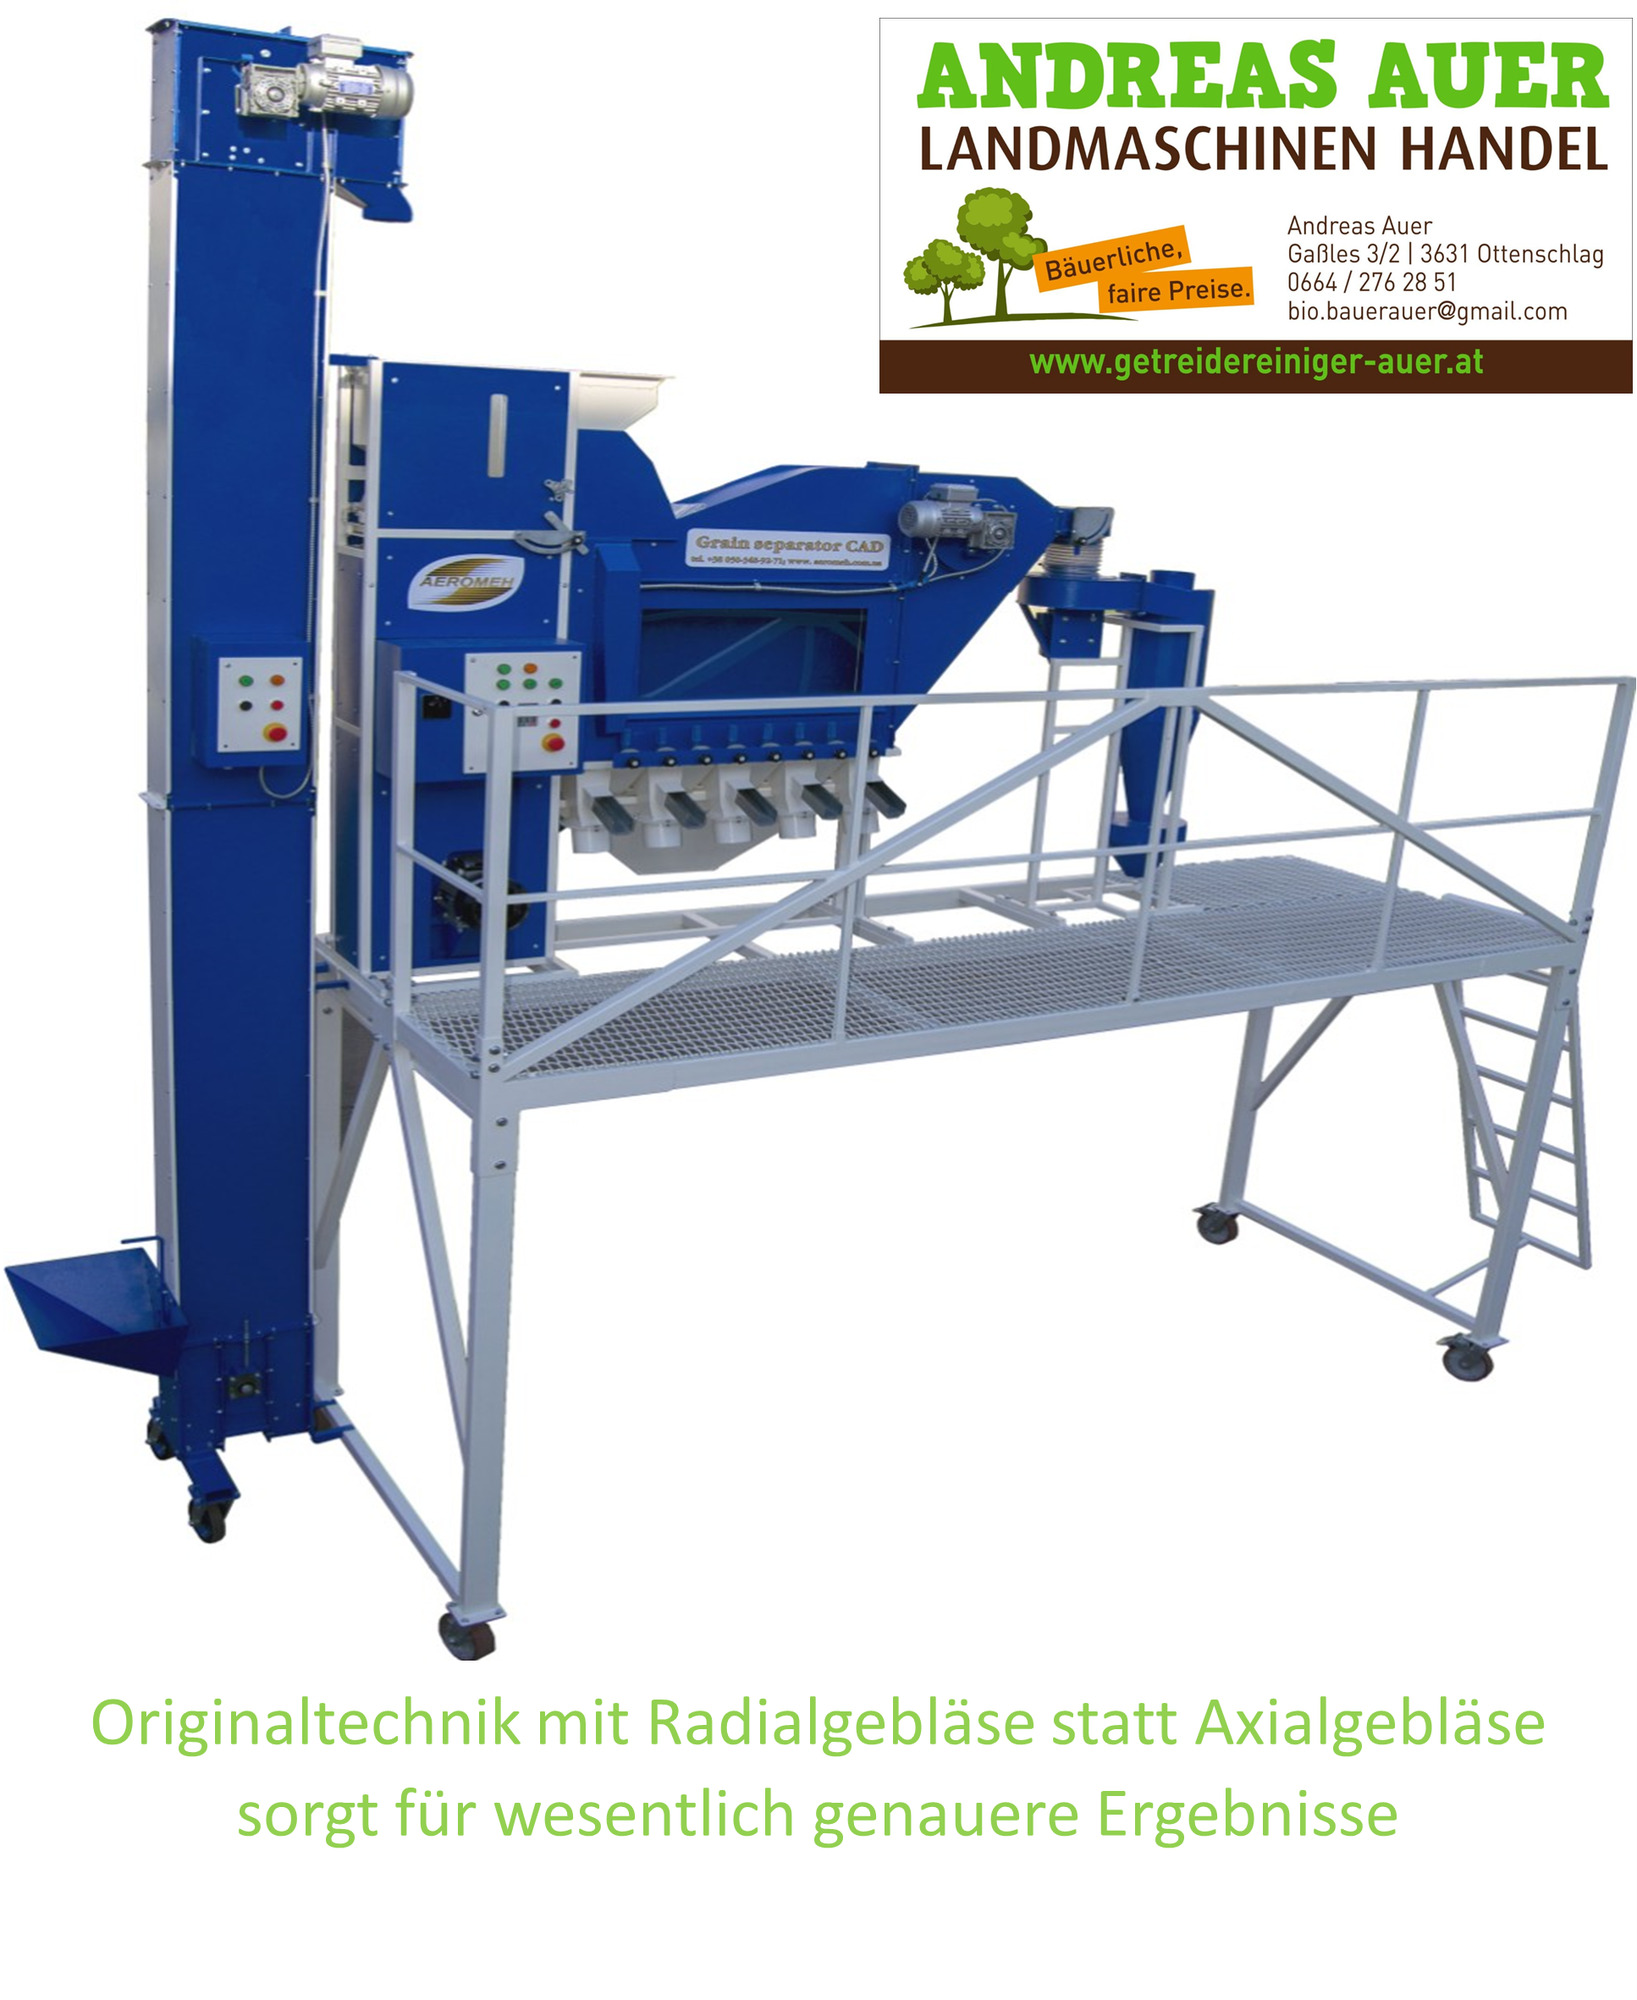 Andreas Auer Landmaschinen Handel undefined: صورة 12